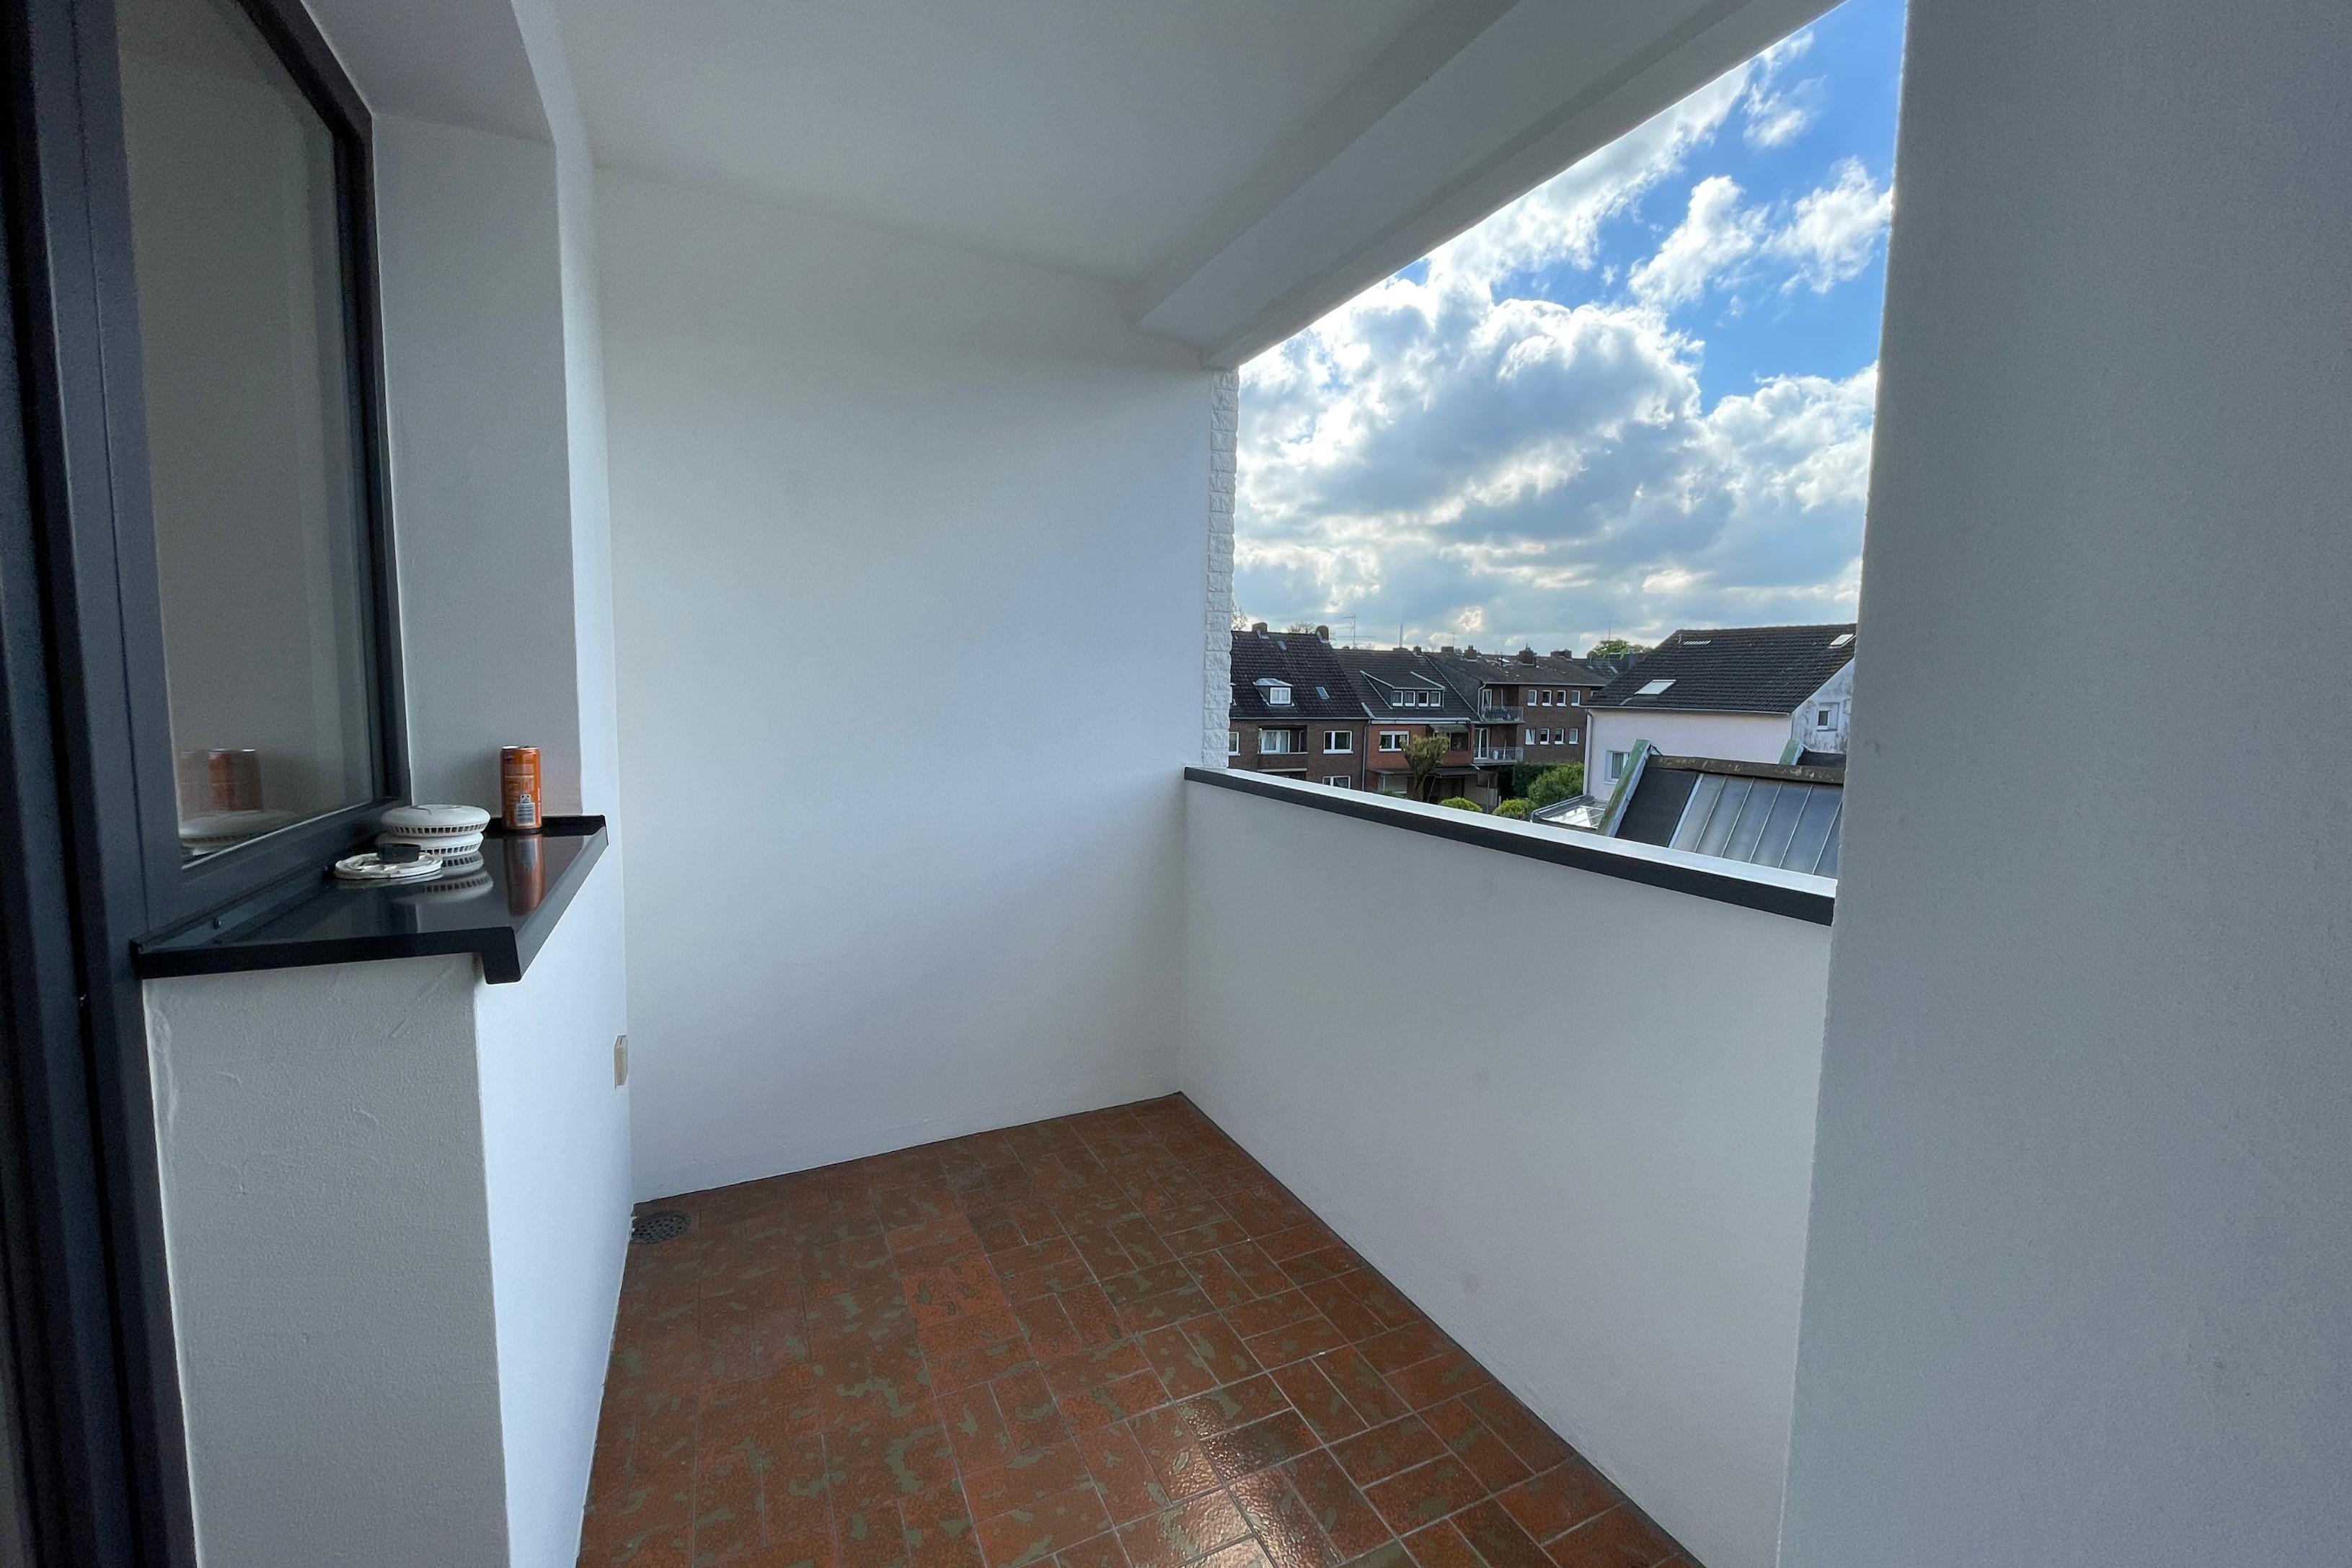 Immobilie Nr.0465 - Etagenwohnung mit Balkon - Bild 8.jpg